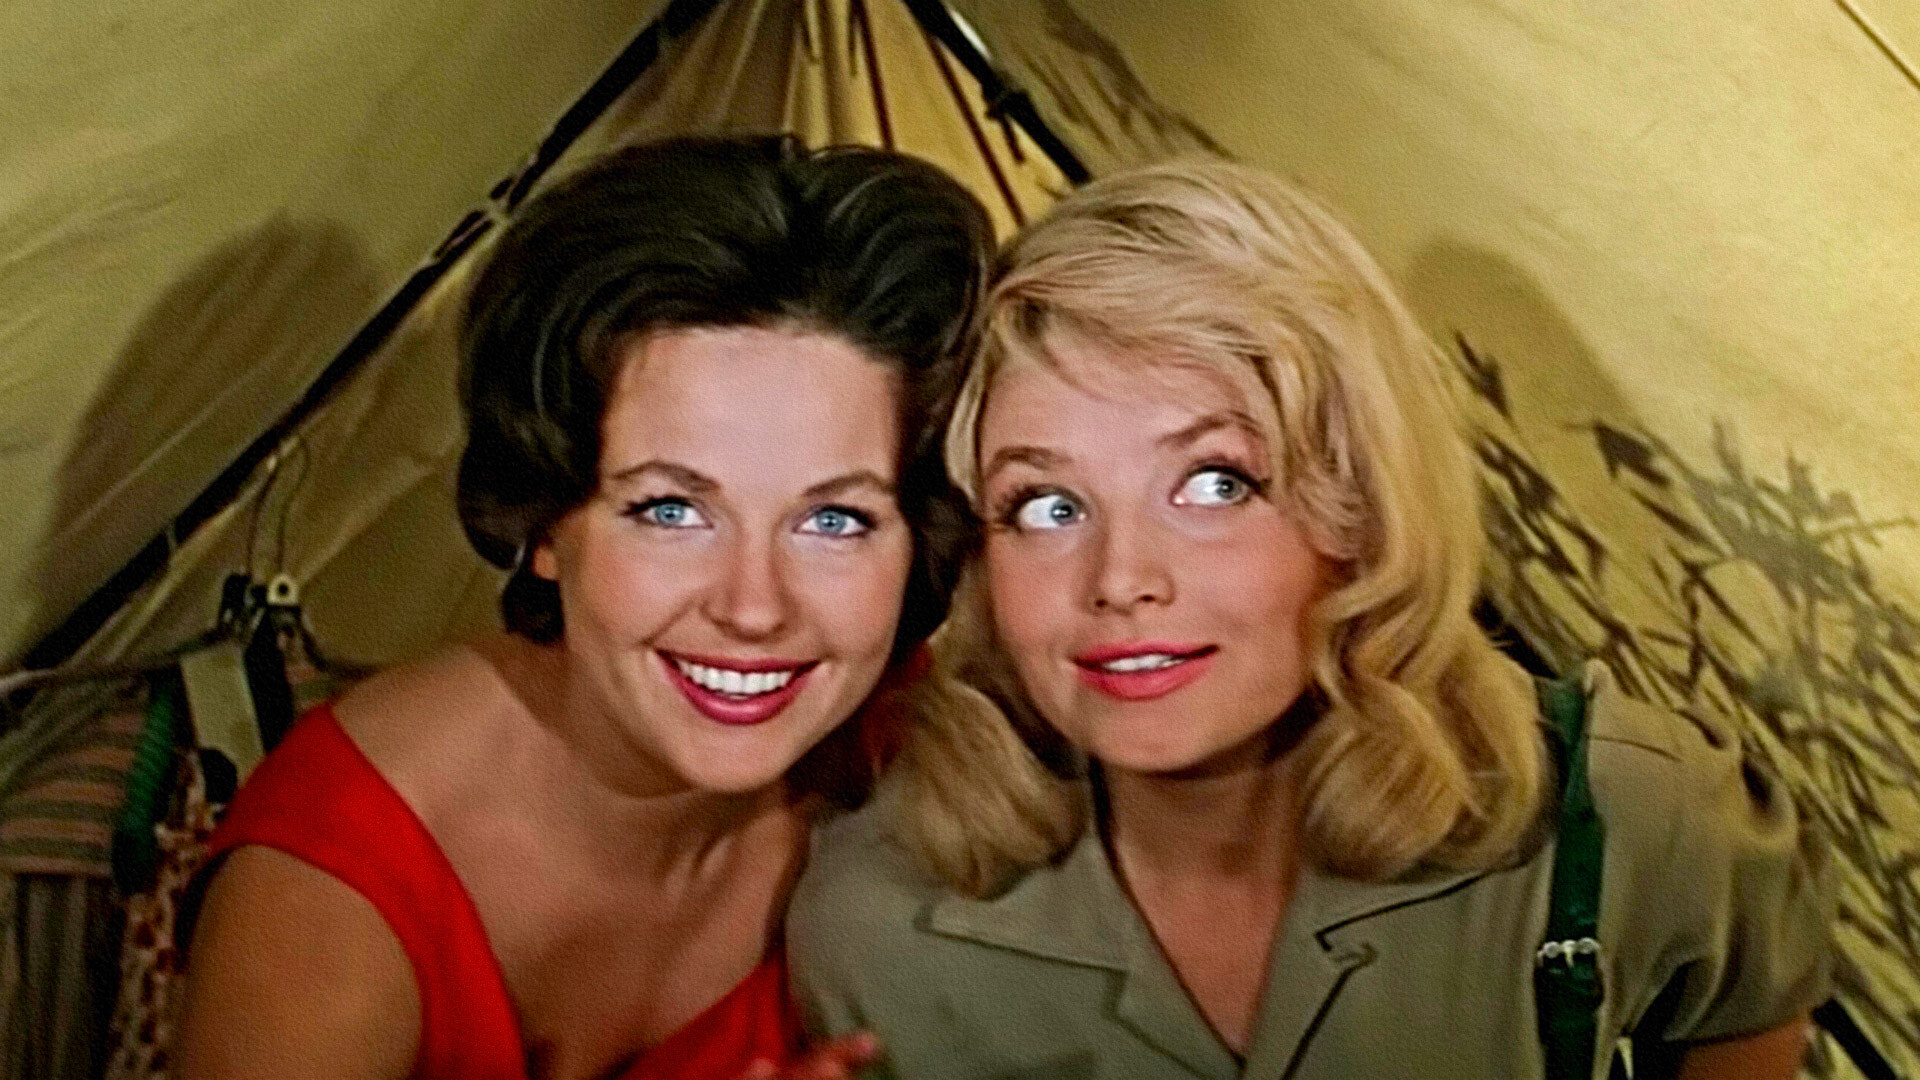 Una escena de la película 3+2 sobre las vacaciones de verano. Según el argumento, una de las damas (izquierda) es entrenadora de animales salvajes, y su amiga (derecha) es actriz.